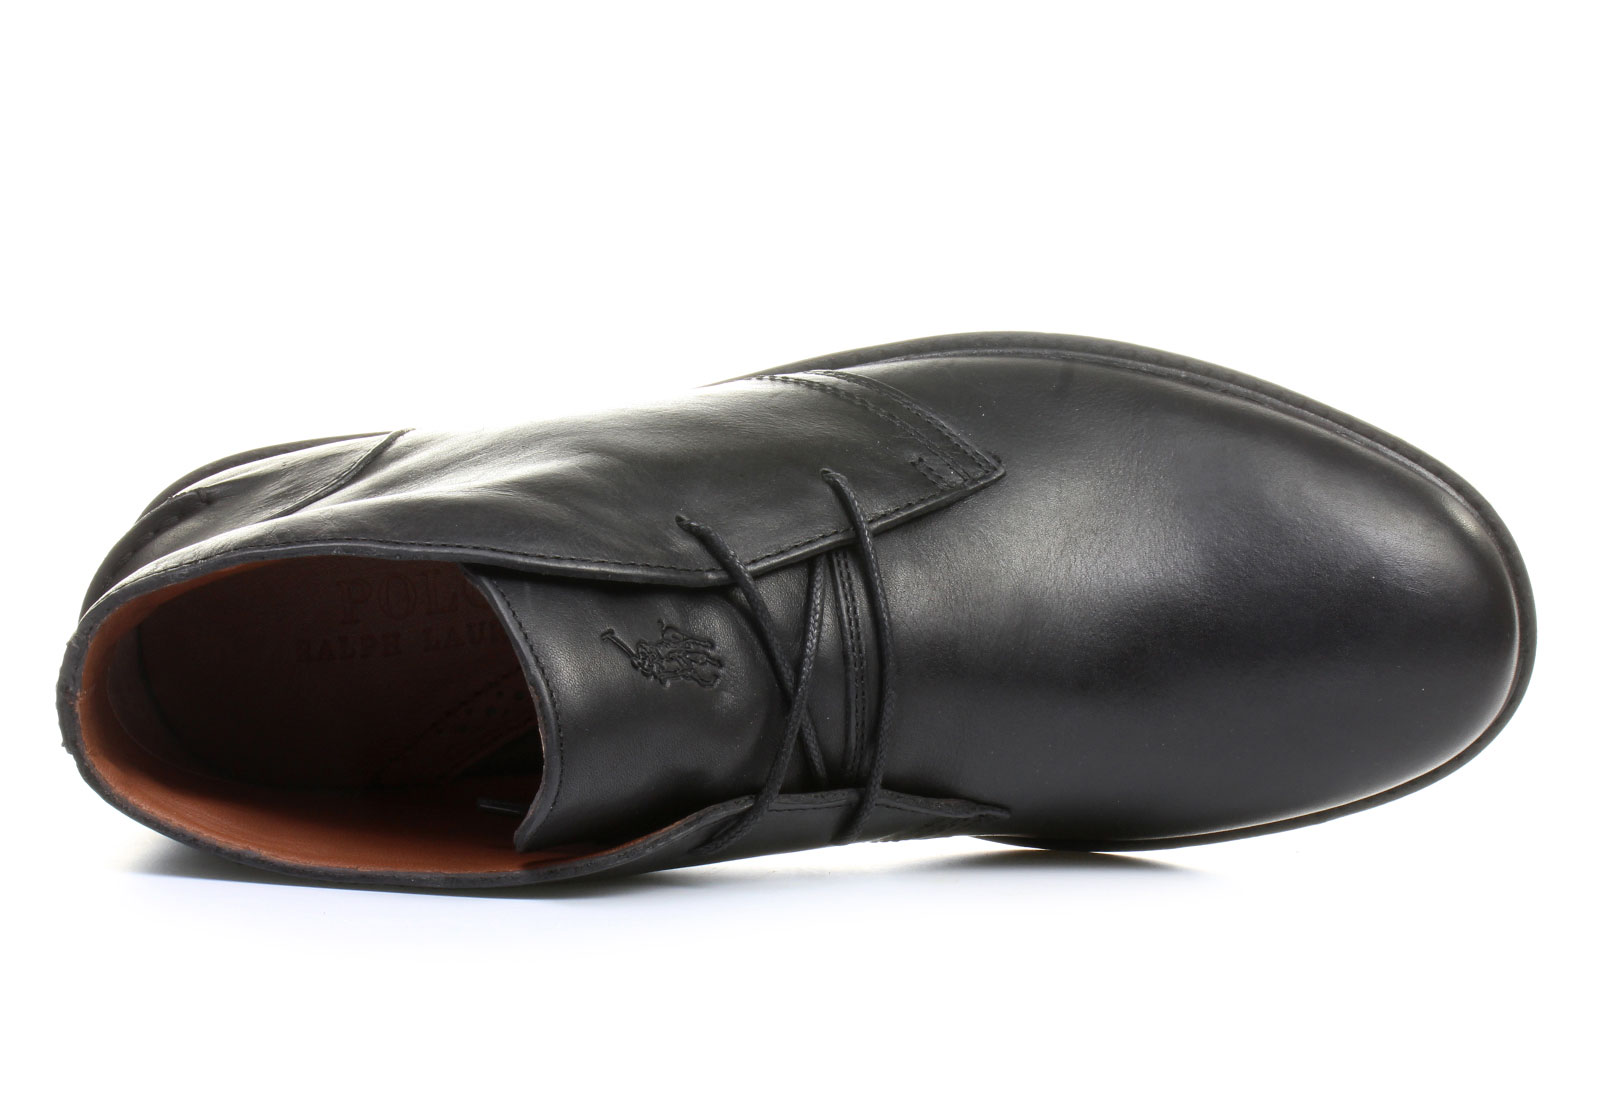 Polo Ralph Lauren Shoes - Marlow - C097-D-A0001 - Online shop for ...